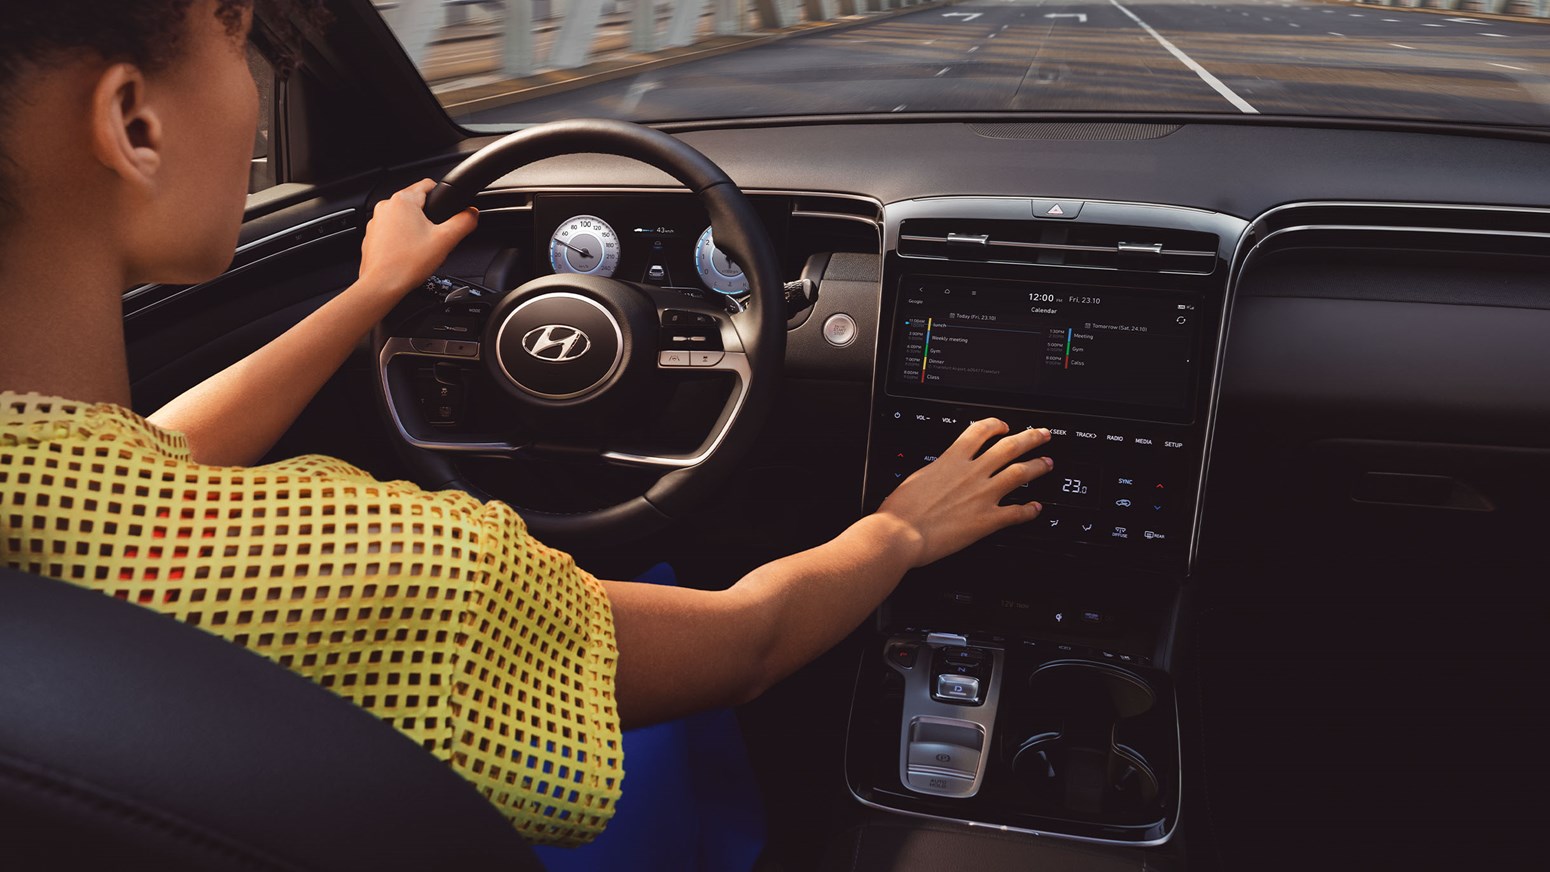 Bildgalleri - Hyundai TUCSON är utrustad med Bluelink, styr bilens funktioner via din smartphone.